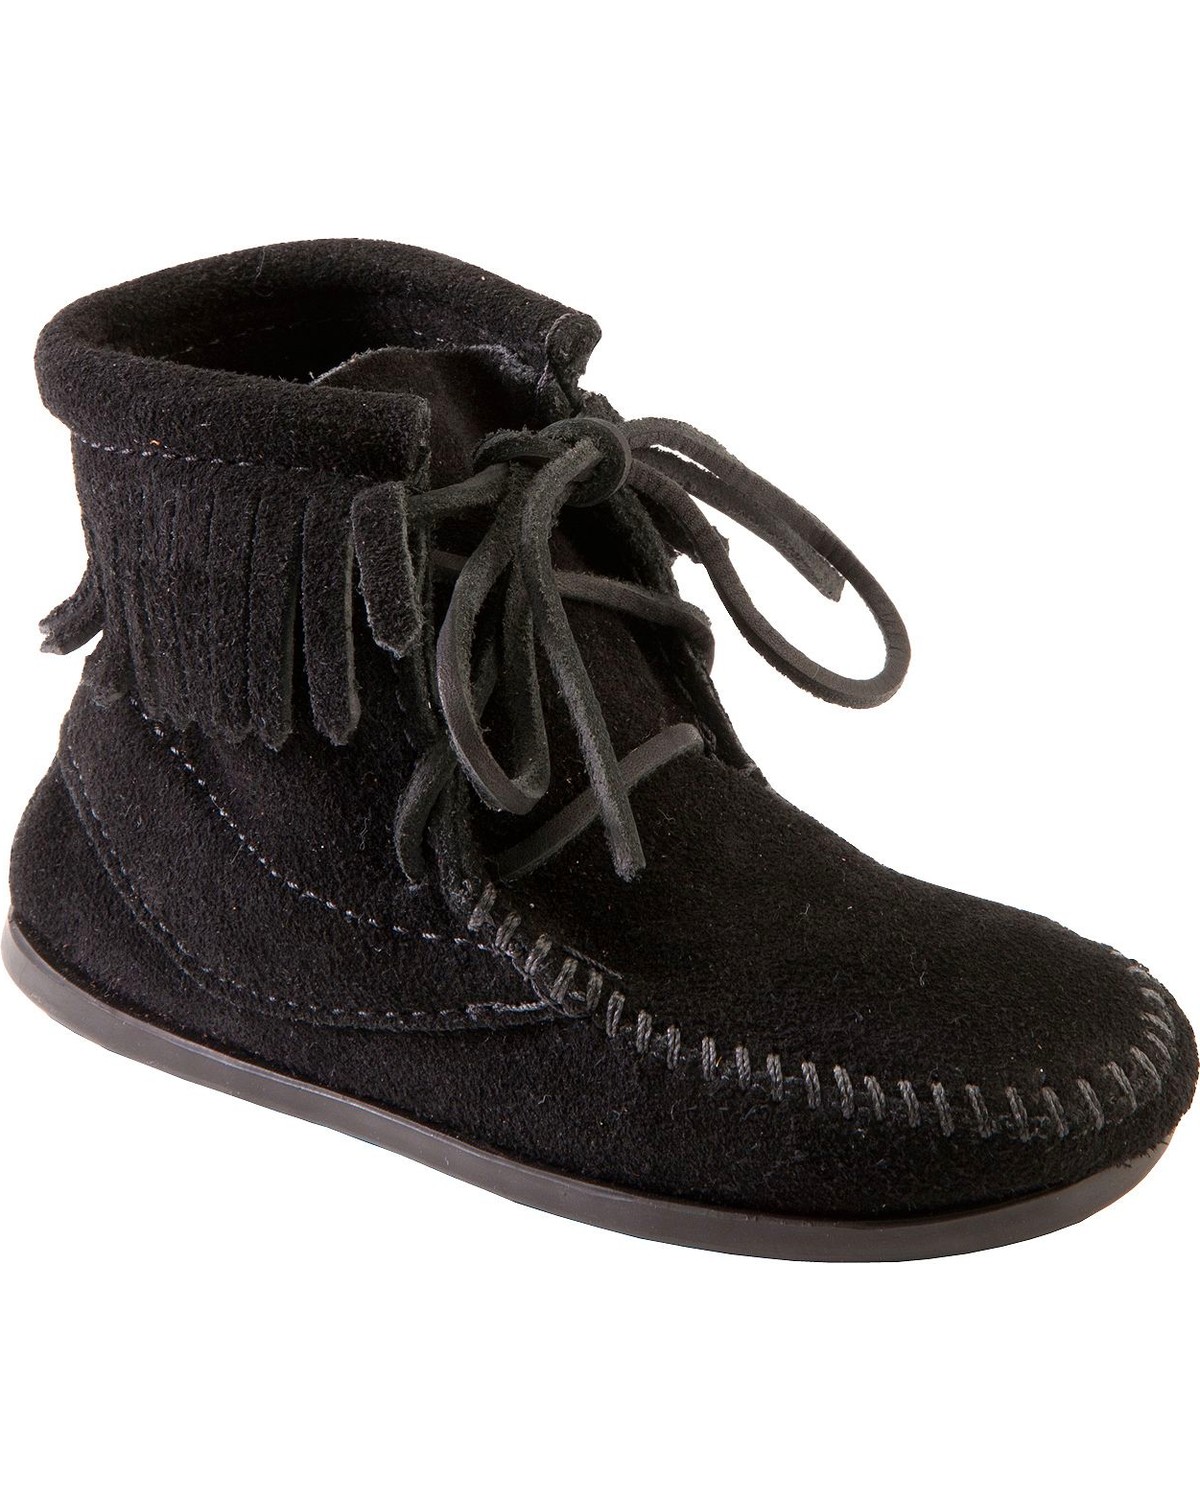 Minnetonka Girls' Ankle Tramper Moccasin Boots - Moc Toe